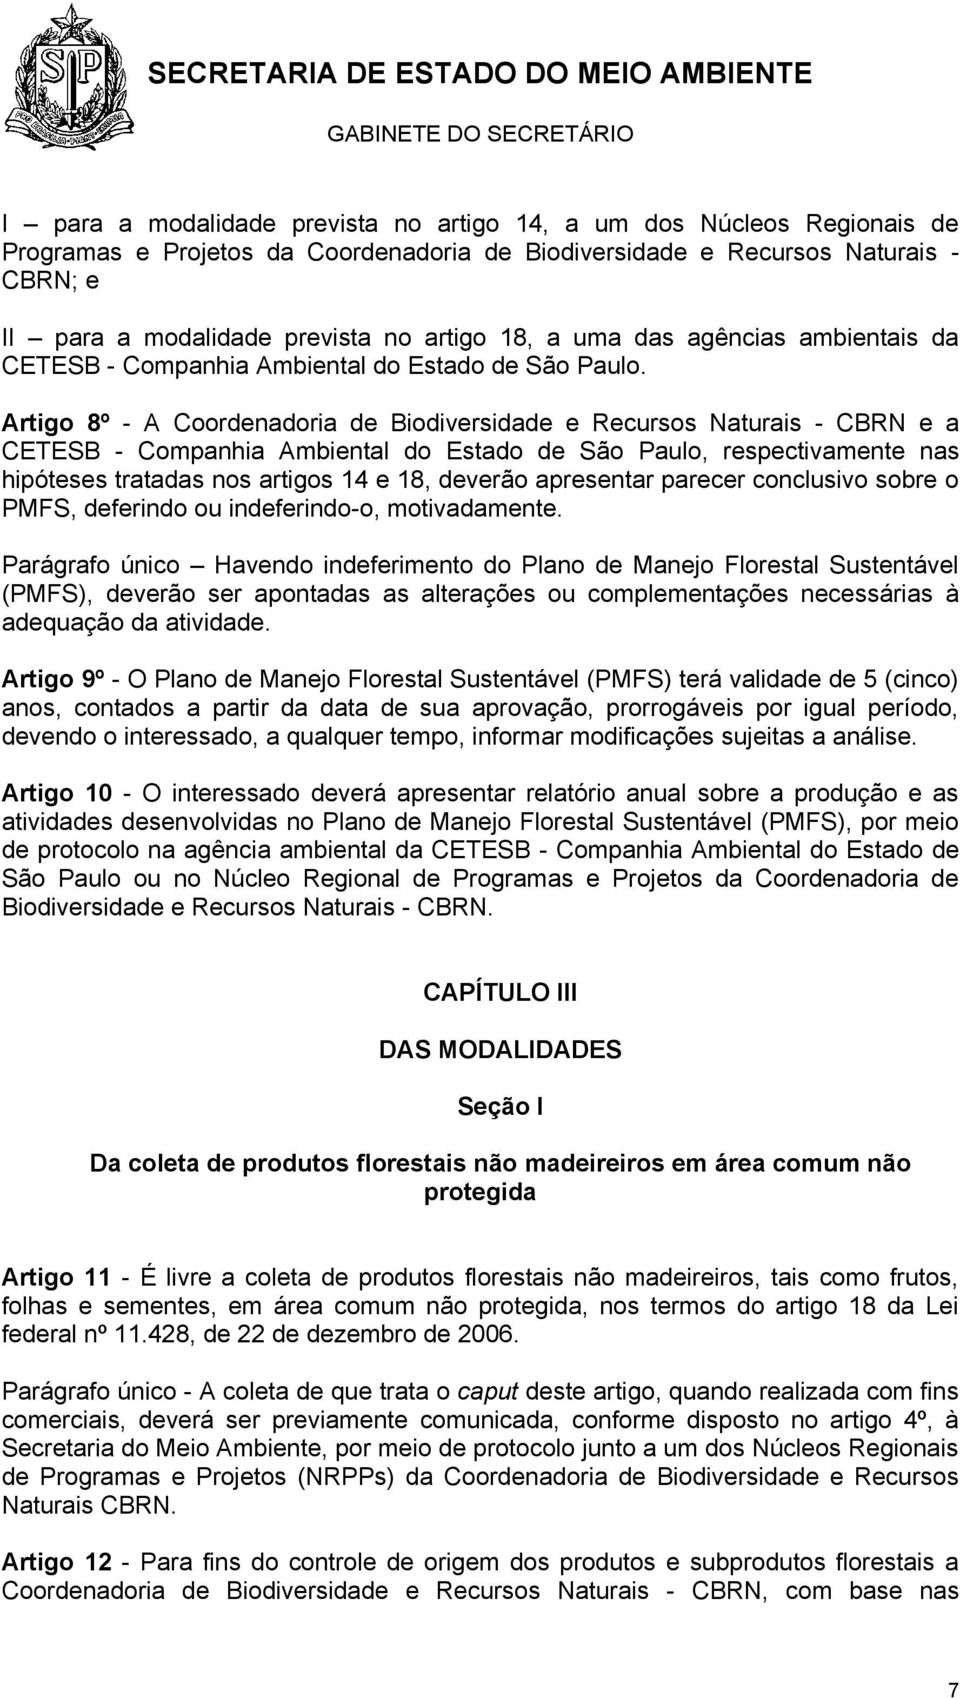 Artigo 8º - A Coordenadoria de Biodiversidade e Recursos Naturais - CBRN e a CETESB - Companhia Ambiental do Estado de São Paulo, respectivamente nas hipóteses tratadas nos artigos 14 e 18, deverão